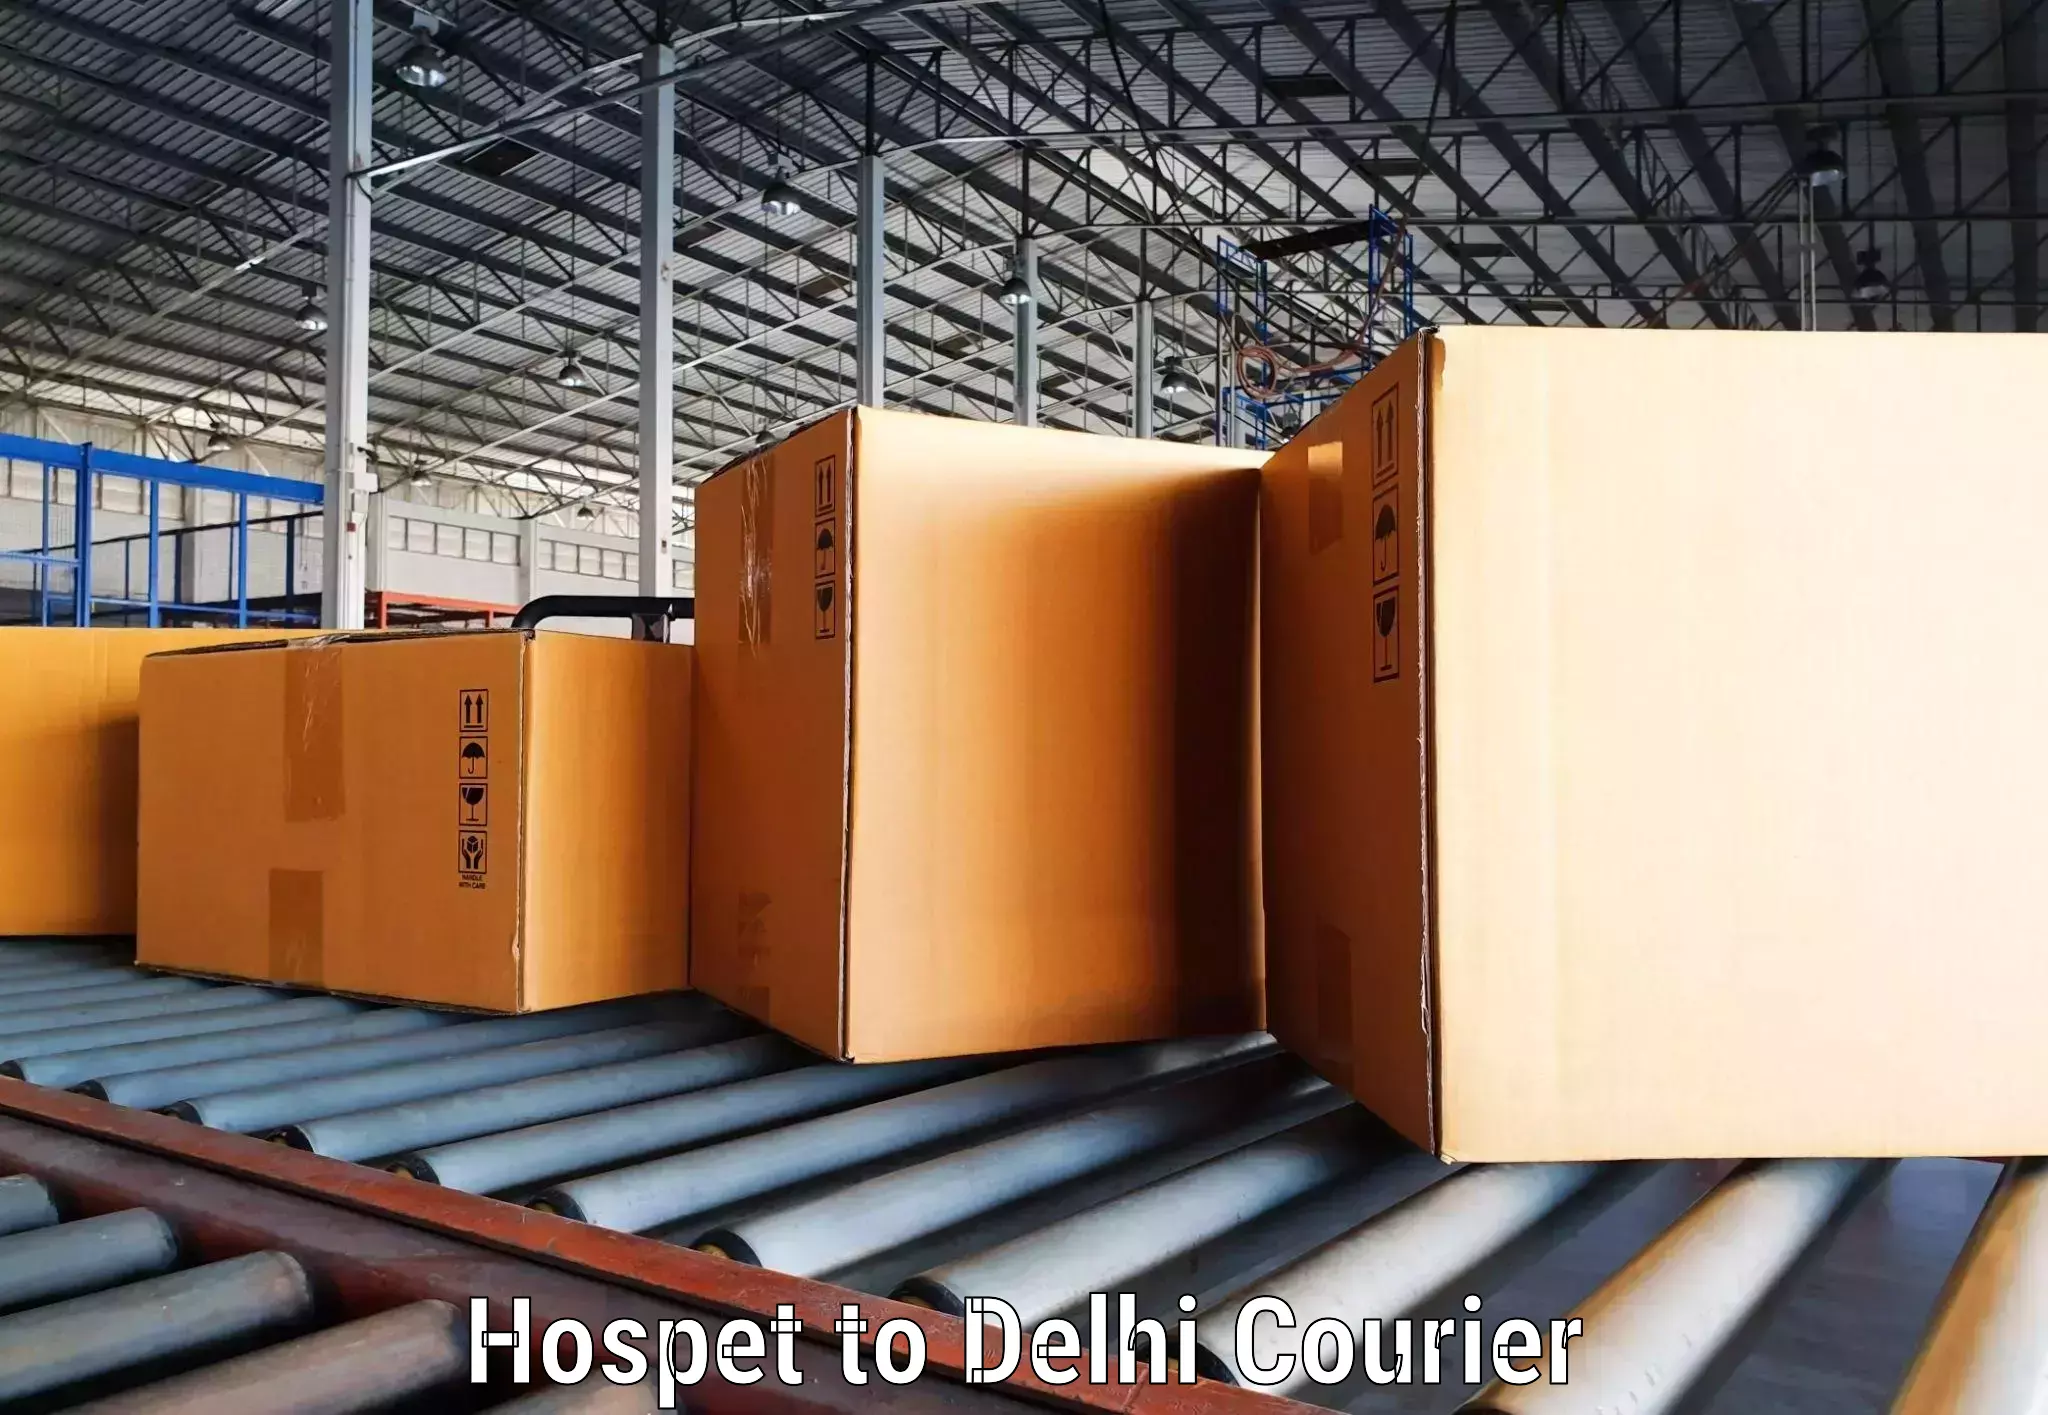 Courier service comparison Hospet to IIT Delhi